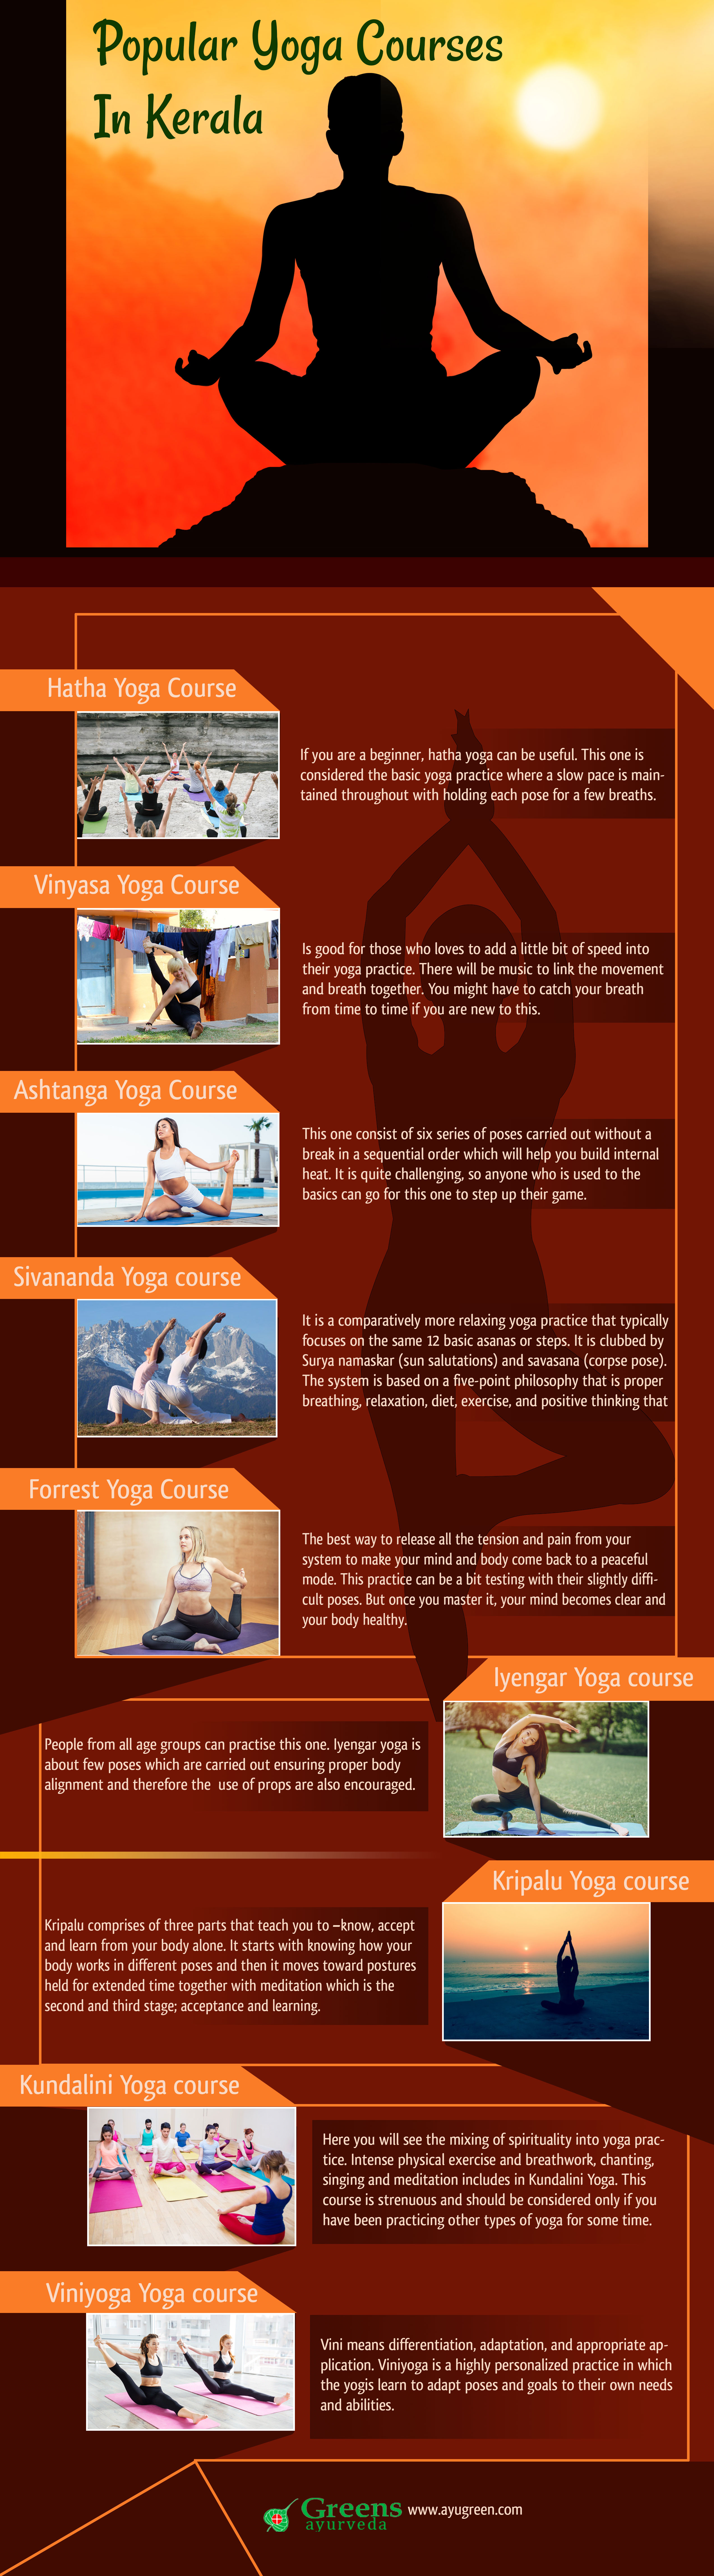 Top Yoga Courses in Kerala